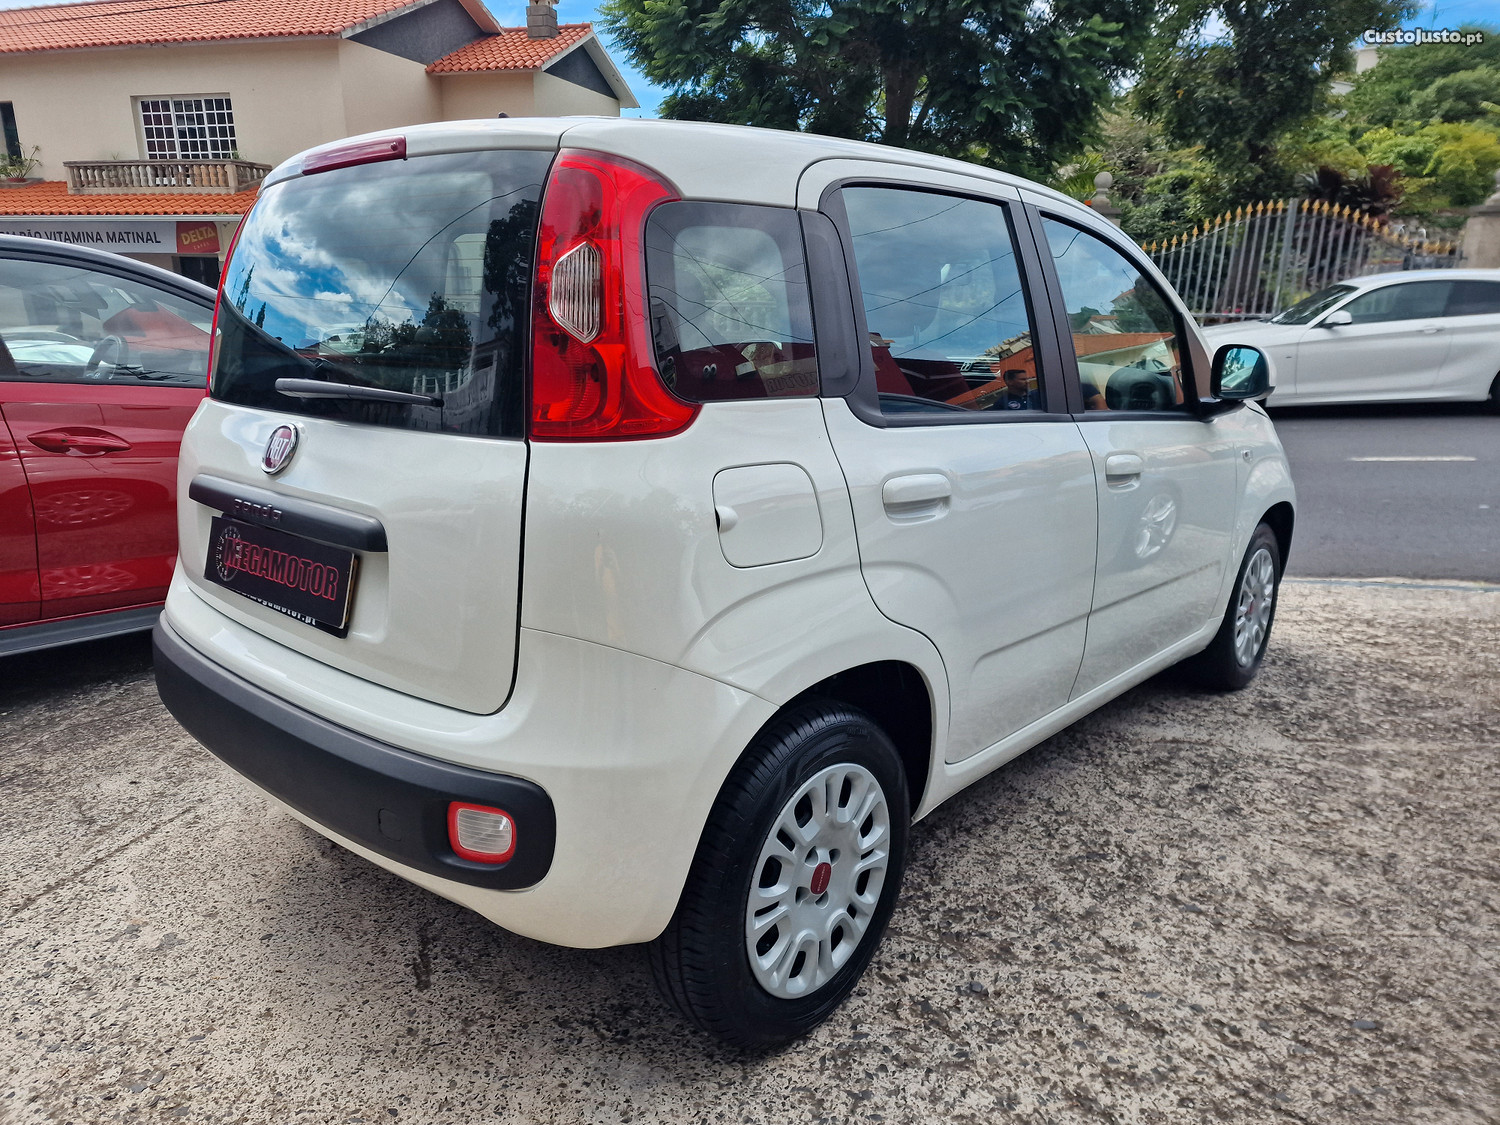 Fiat Panda 1.2 LOUNGE